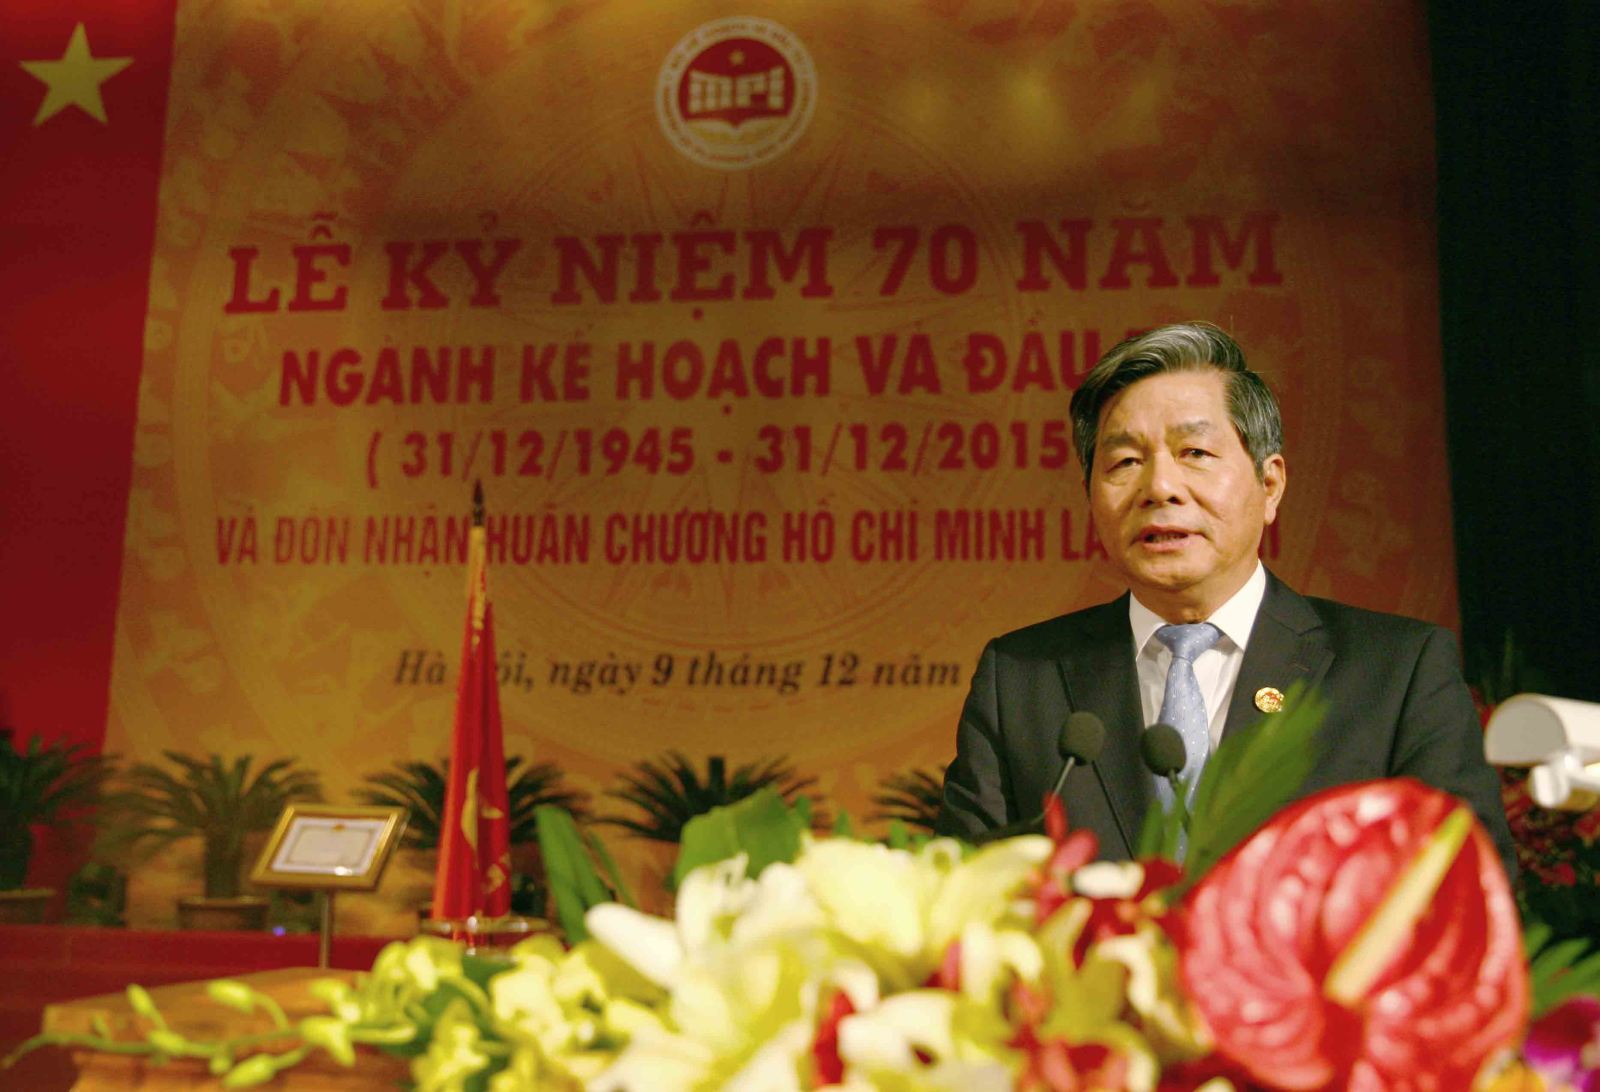 Bộ trưởng Bùi Quang Vinh phát biểu tại Lễ kỷ niệm 70 năm ngành Kế hoạch và đầu tư (ảnh: MPI)